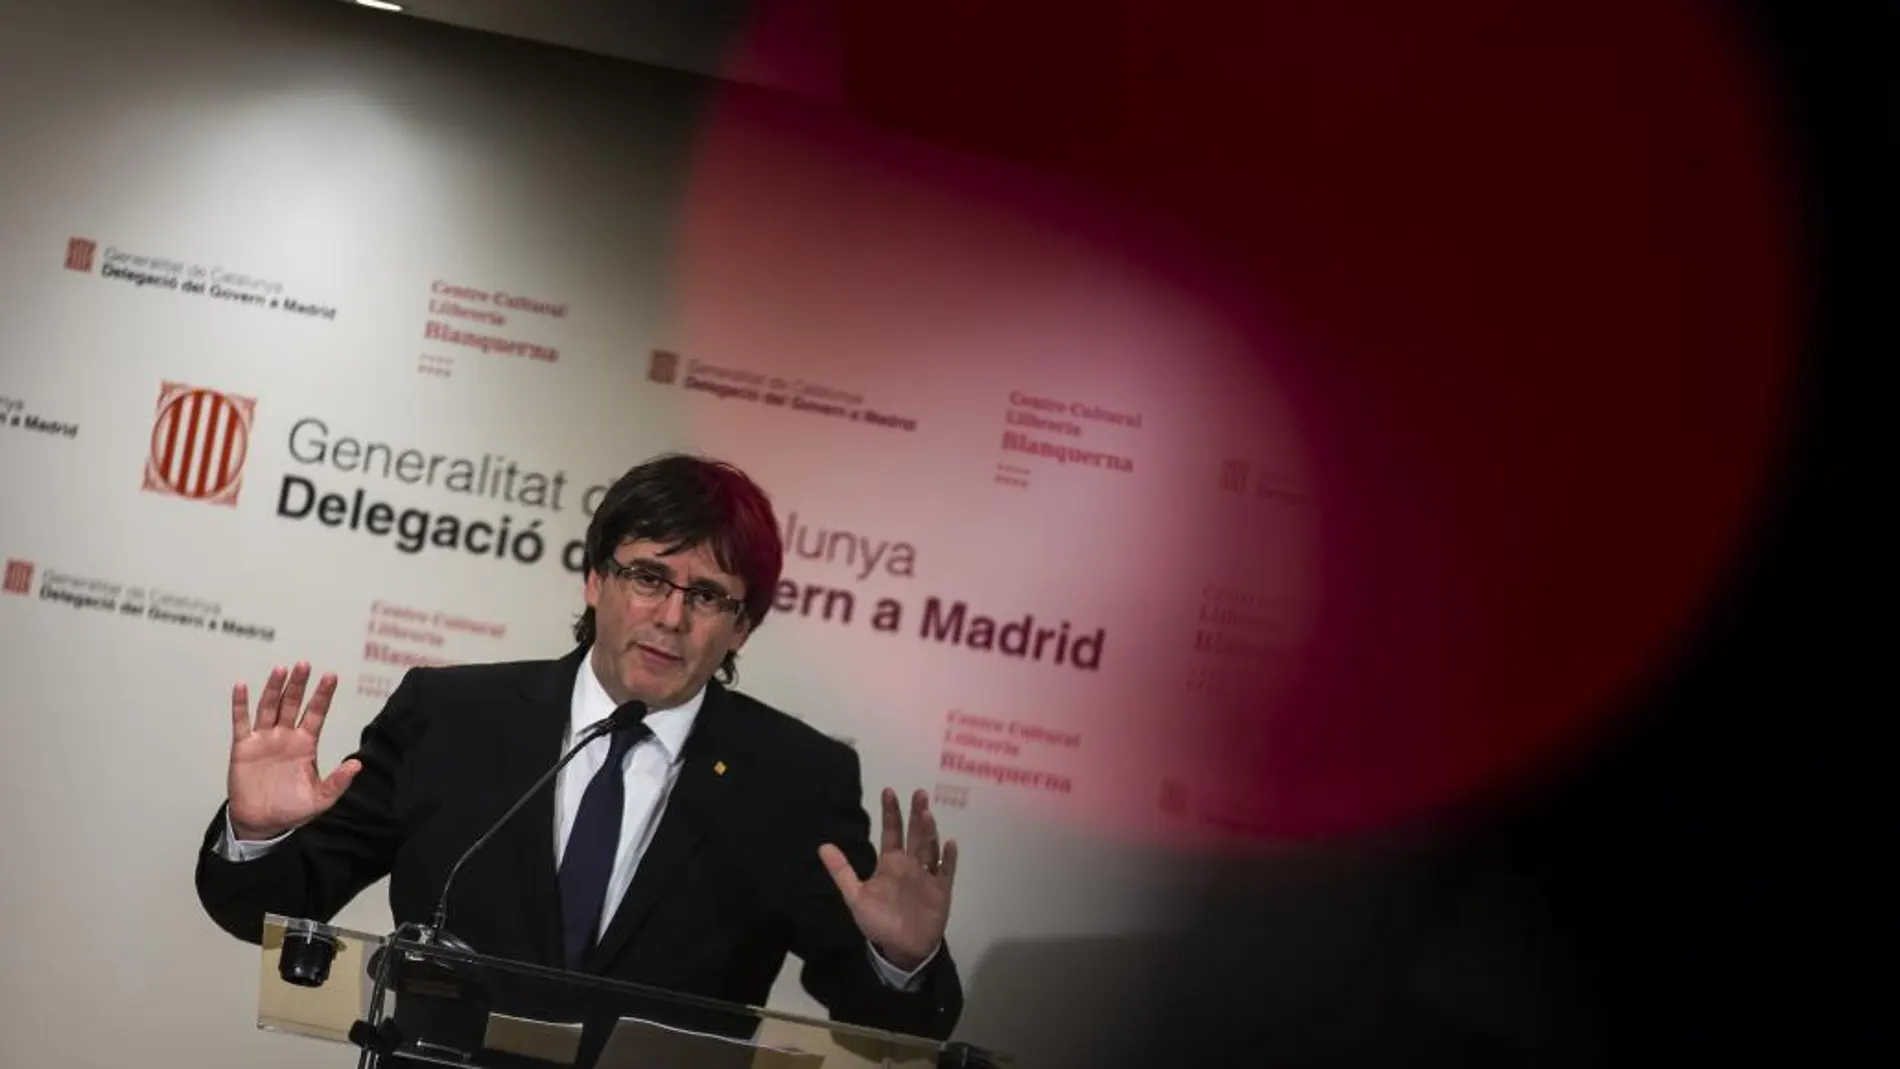 Rueda de prensa de Carles Puigdemont en la Librería Blanquerna de Madrid